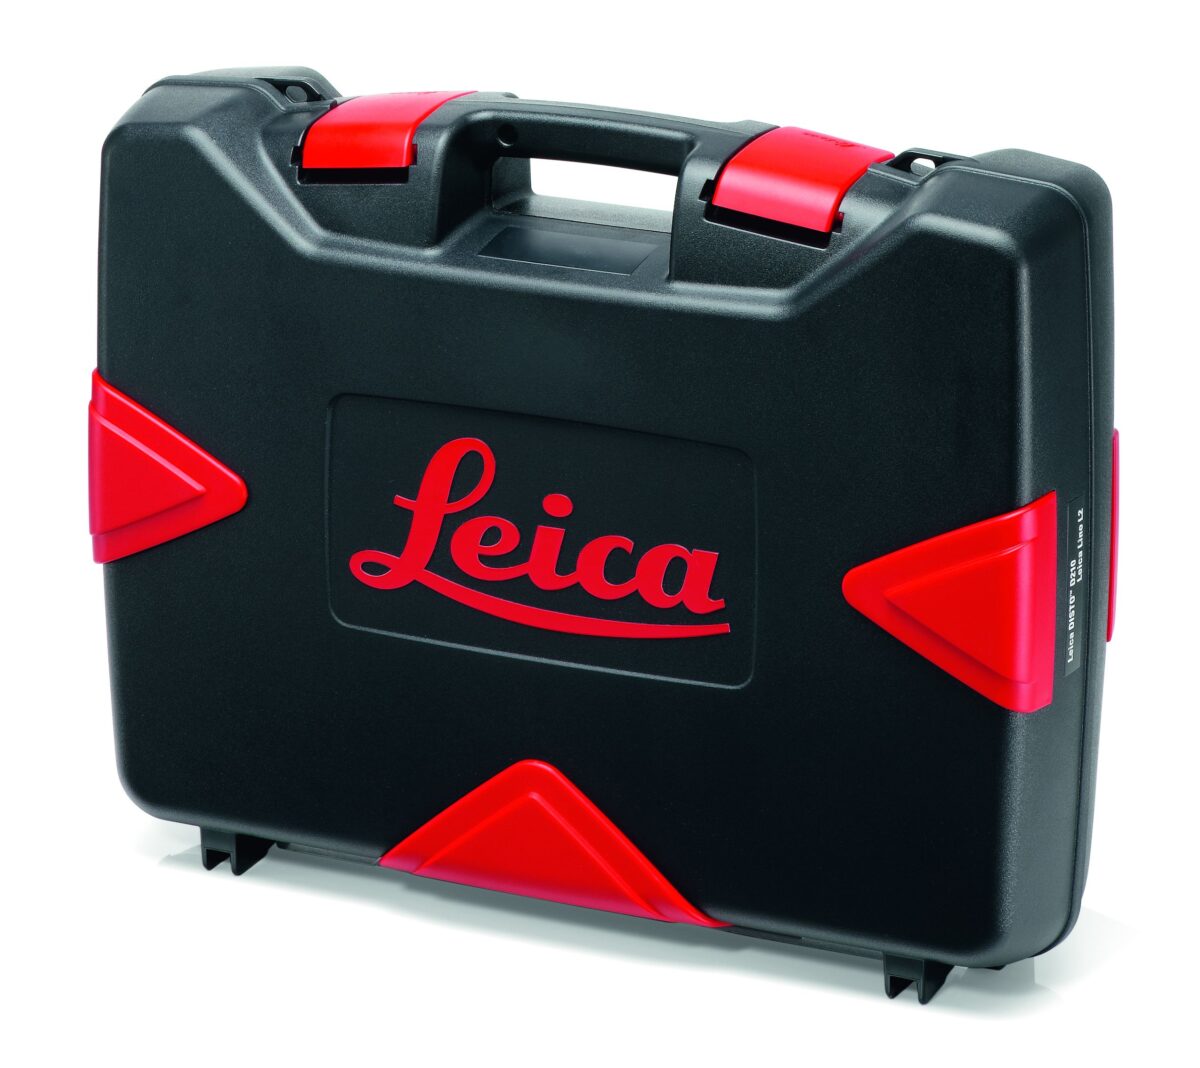 Leica Hard Case